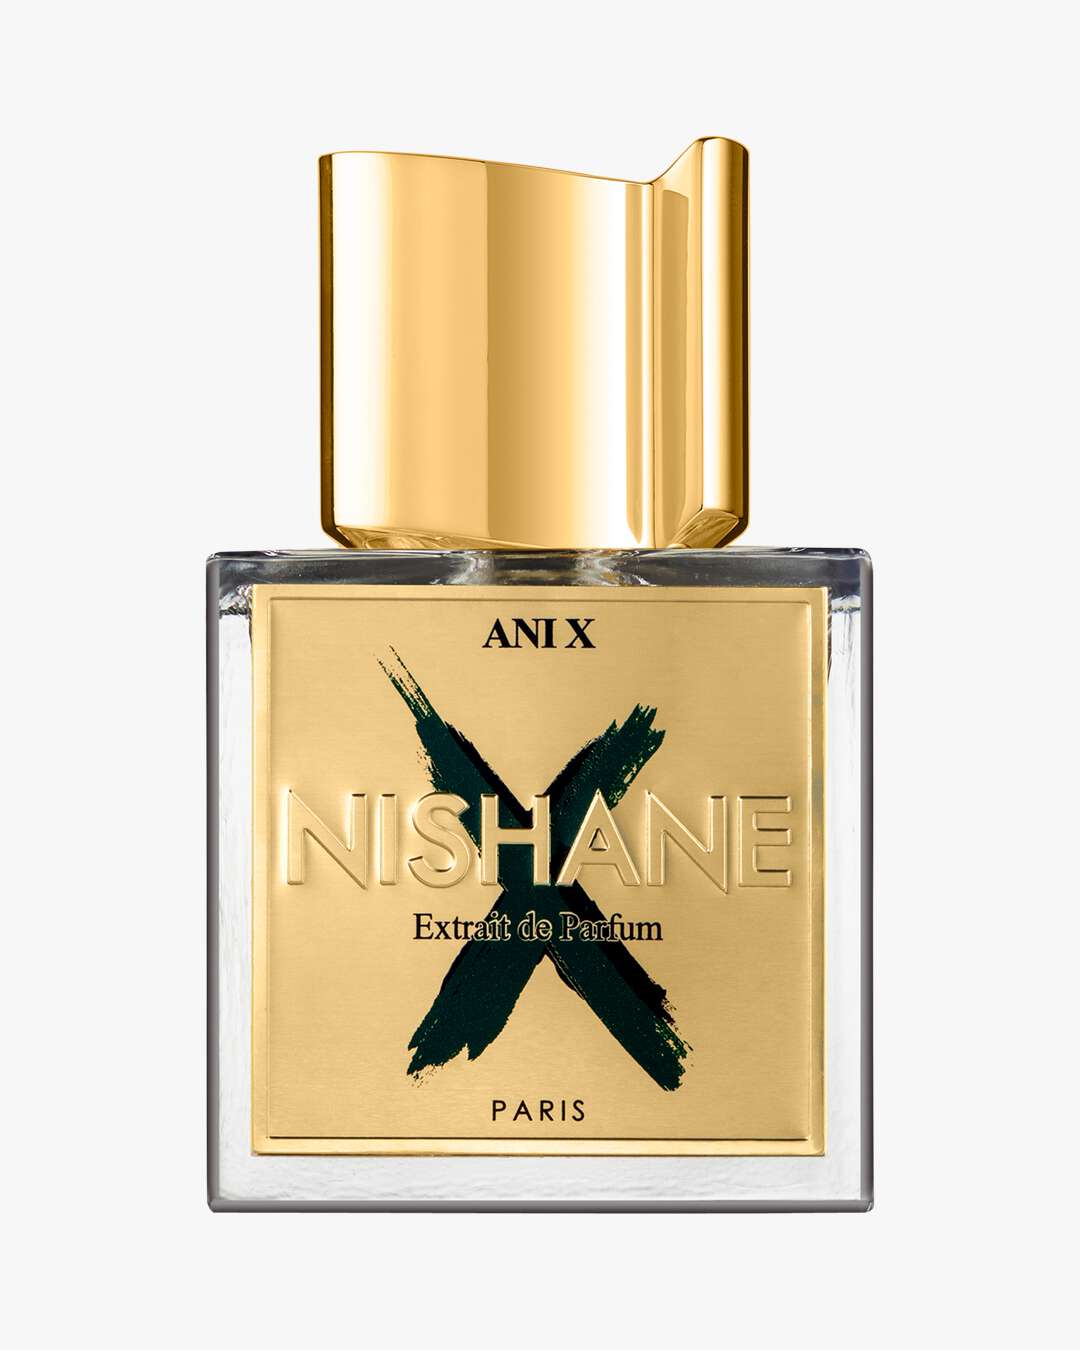 ANI X EXTRAIT DE PARFUM 50 ml